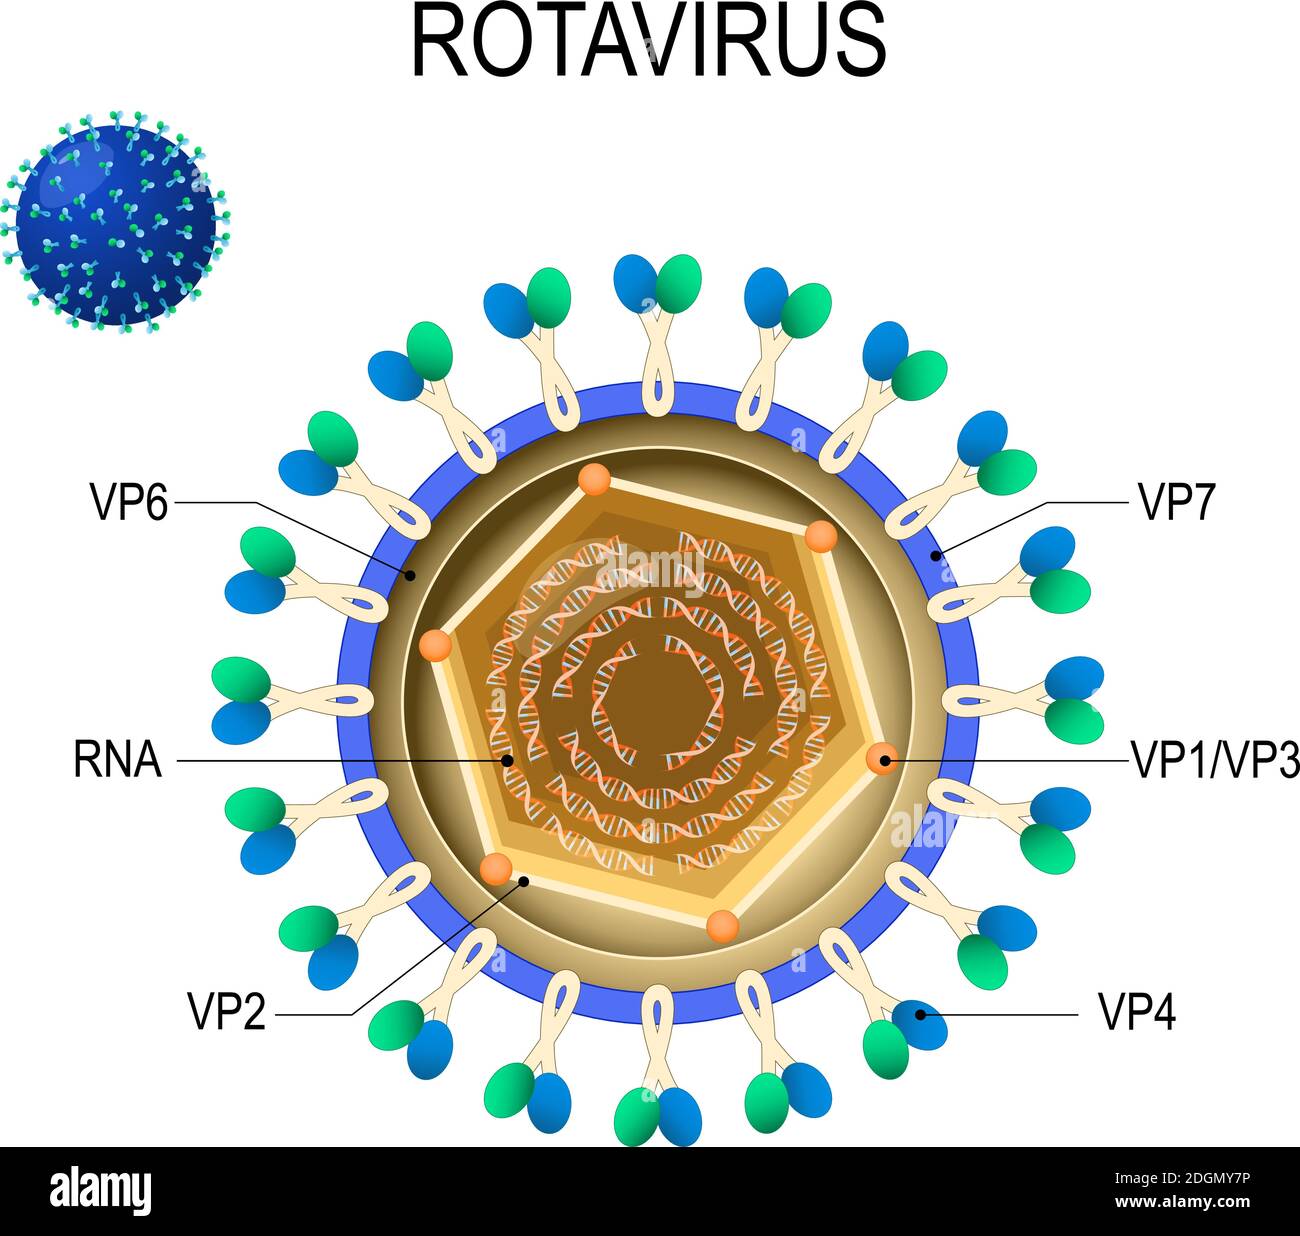 Anatomia del rotavirus. Struttura del virione. Diagramma vettoriale della posizione delle proteine strutturali del rotavirus. Virus Rota che causa gastroenterite acuta Illustrazione Vettoriale